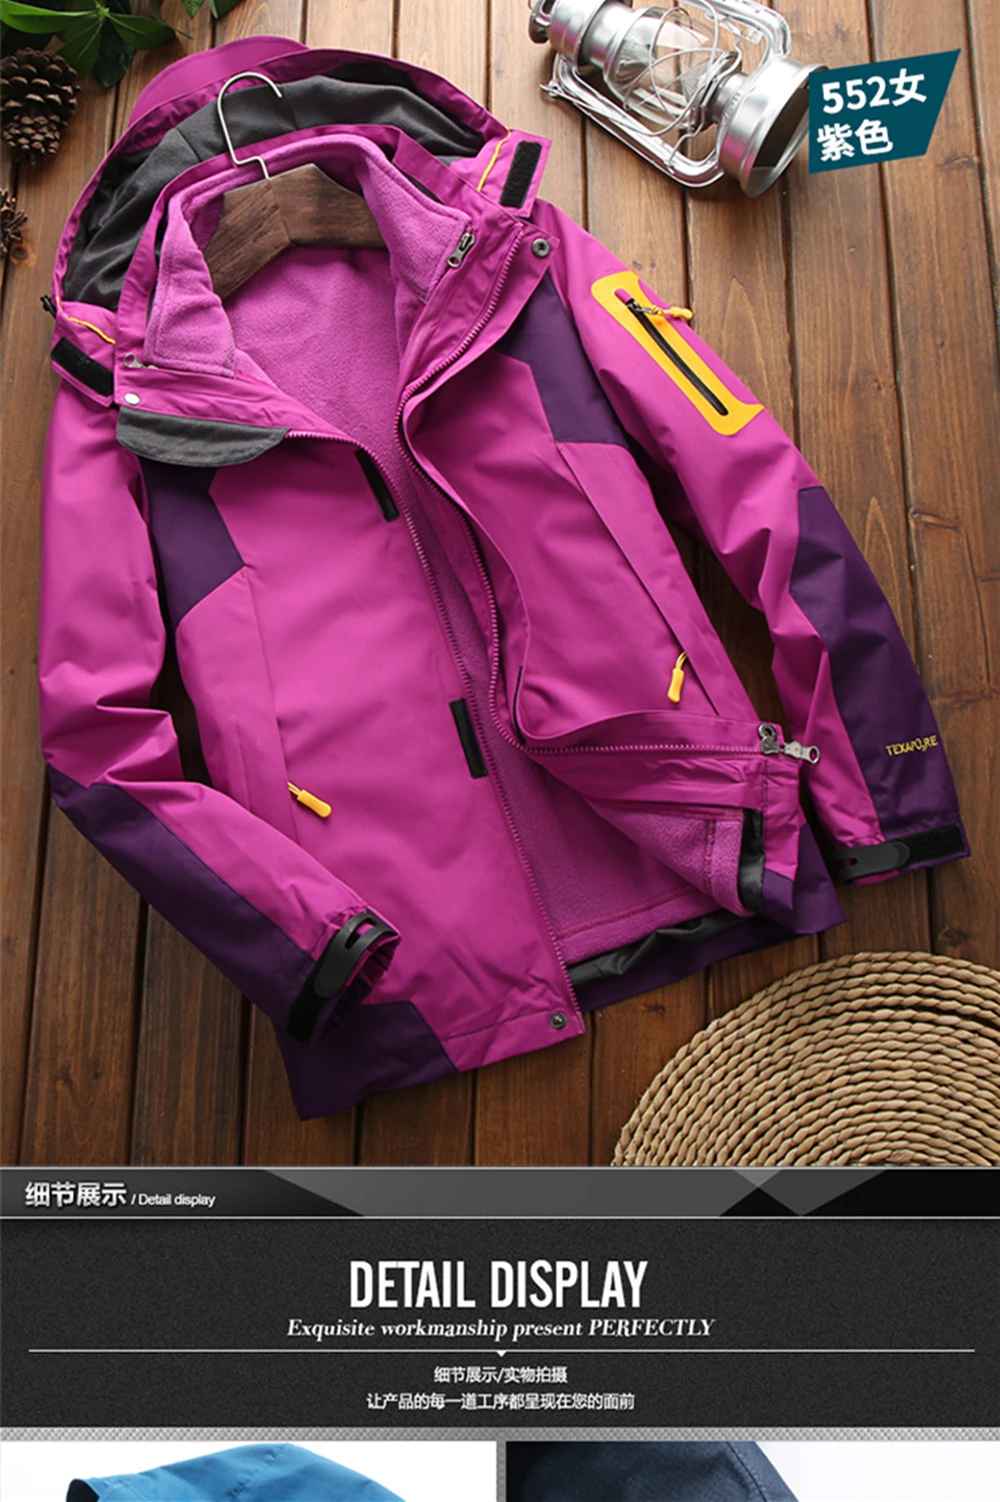 Новая флисовая куртка для мужчин и женщин, водонепроницаемая Флисовая теплая верхняя куртка с капюшоном, Походное пальто, лыжная походная одежда с капюшоном для кемпинга